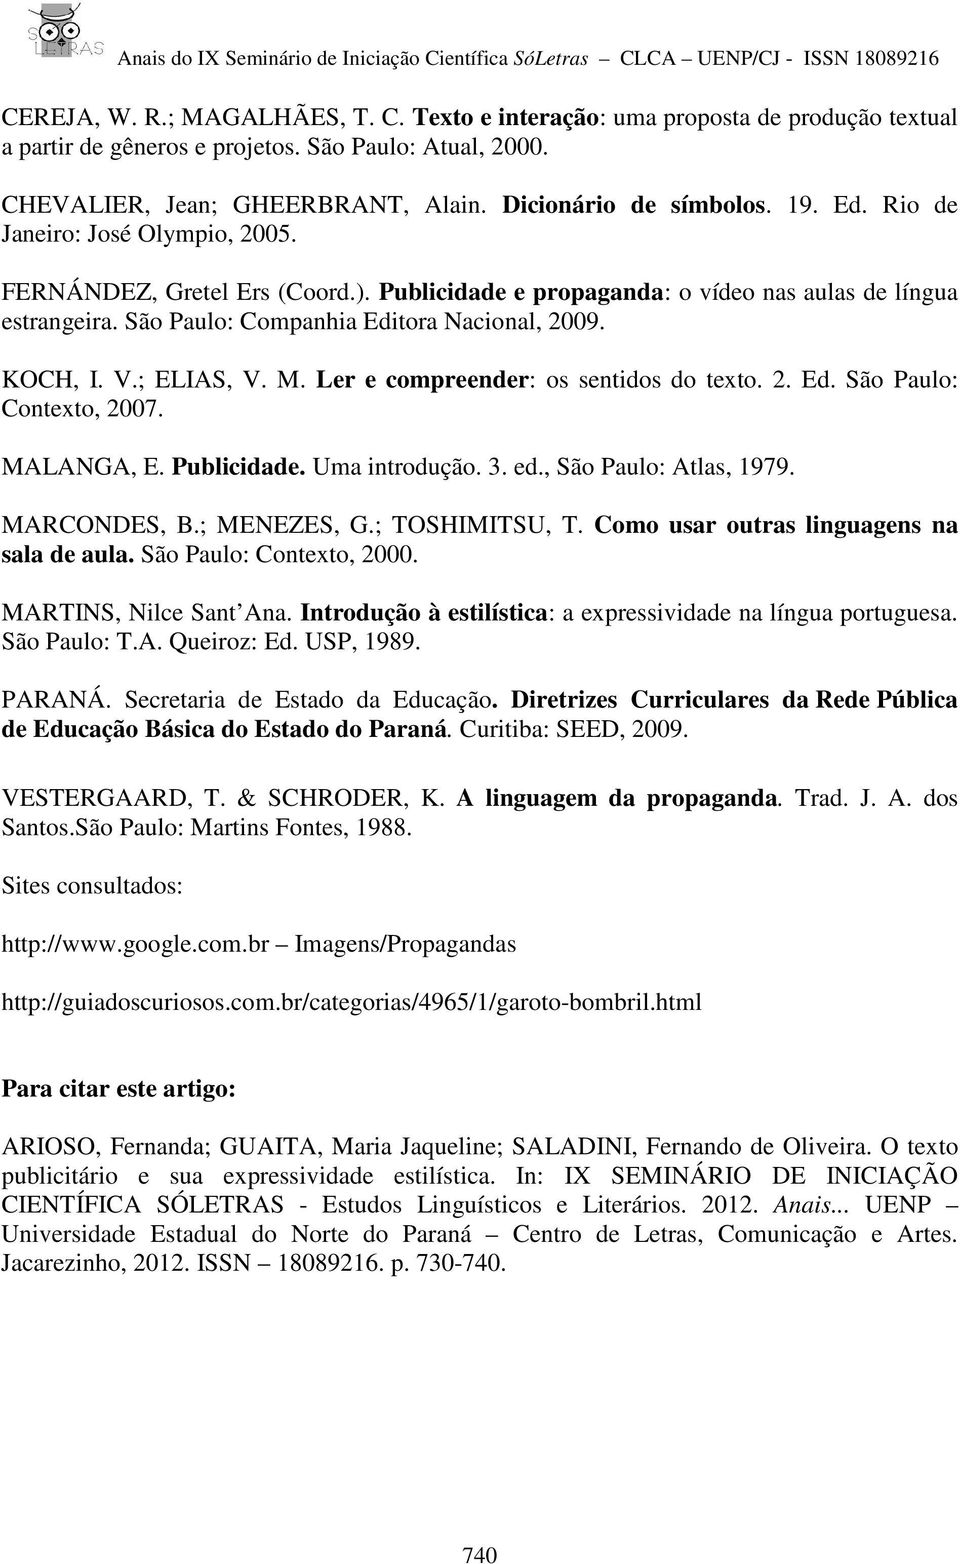 ; ELIAS, V. M. Ler e compreender: os sentidos do texto. 2. Ed. São Paulo: Contexto, 2007. MALANGA, E. Publicidade. Uma introdução. 3. ed., São Paulo: Atlas, 1979. MARCONDES, B.; MENEZES, G.